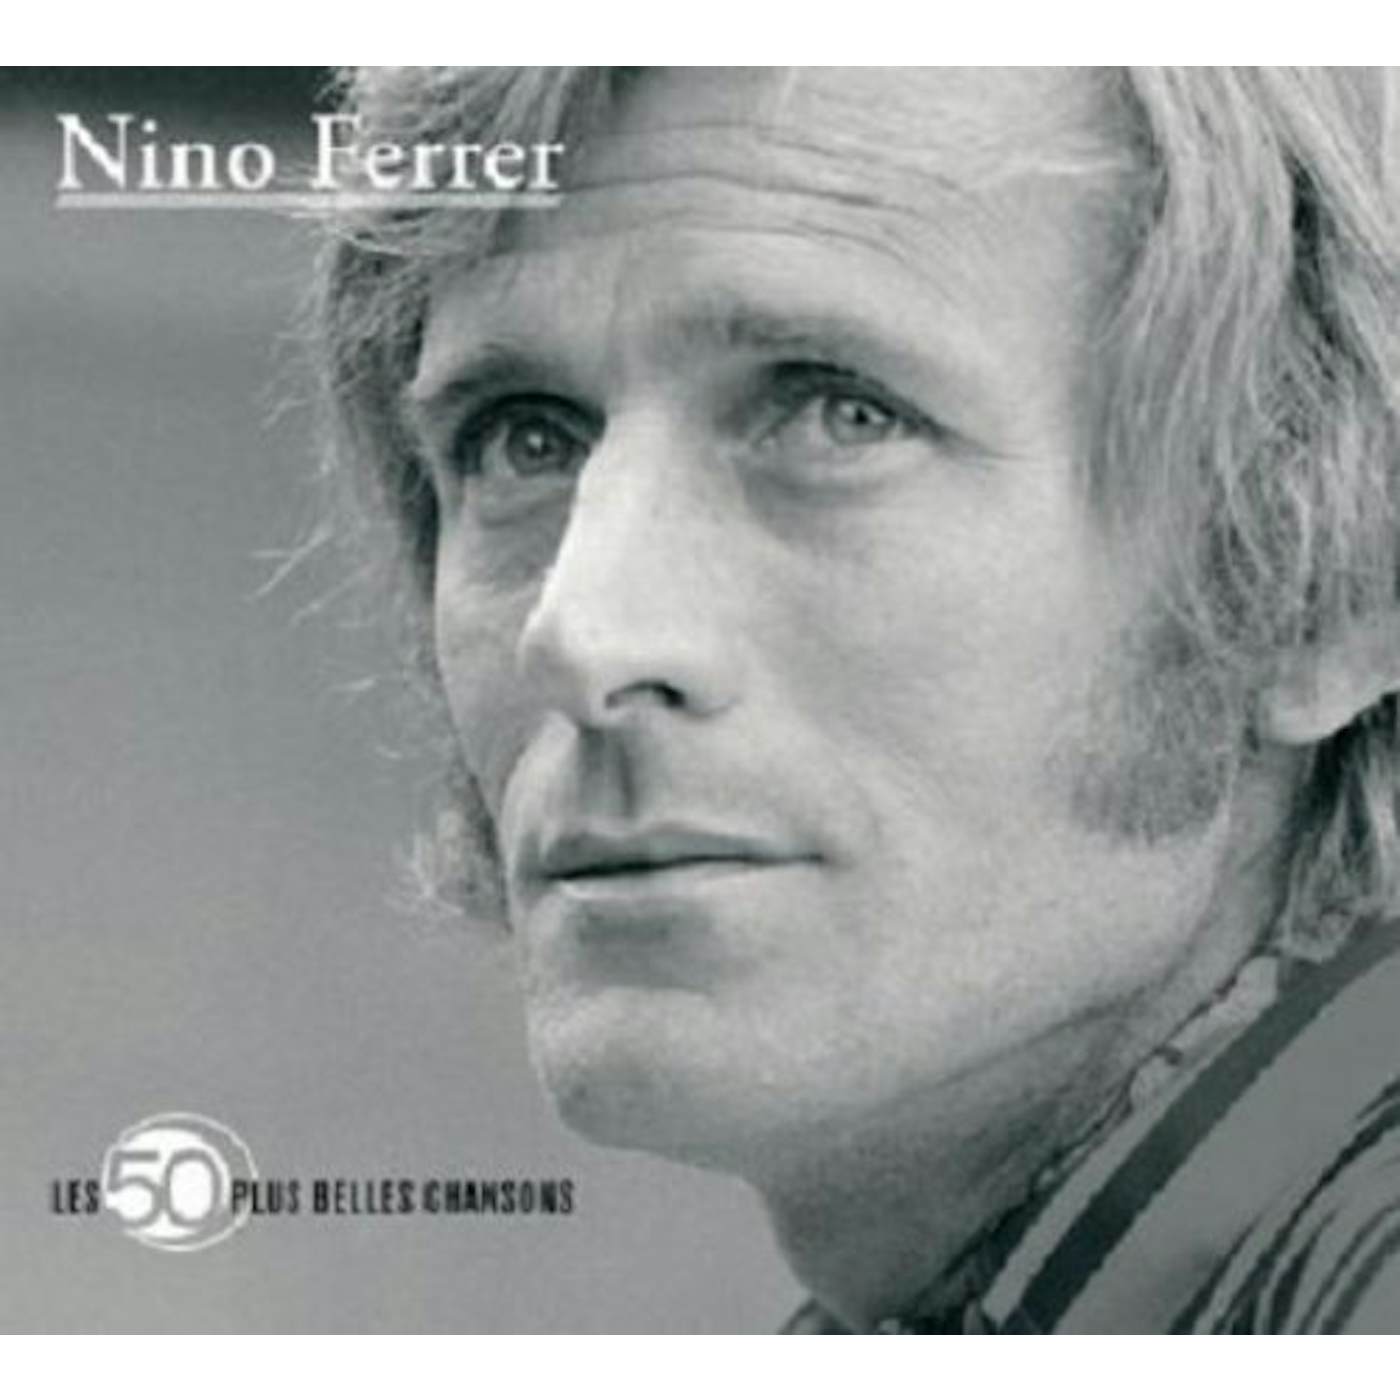 Nino Ferrer 50 PLUS BELLES CHANSONS CD